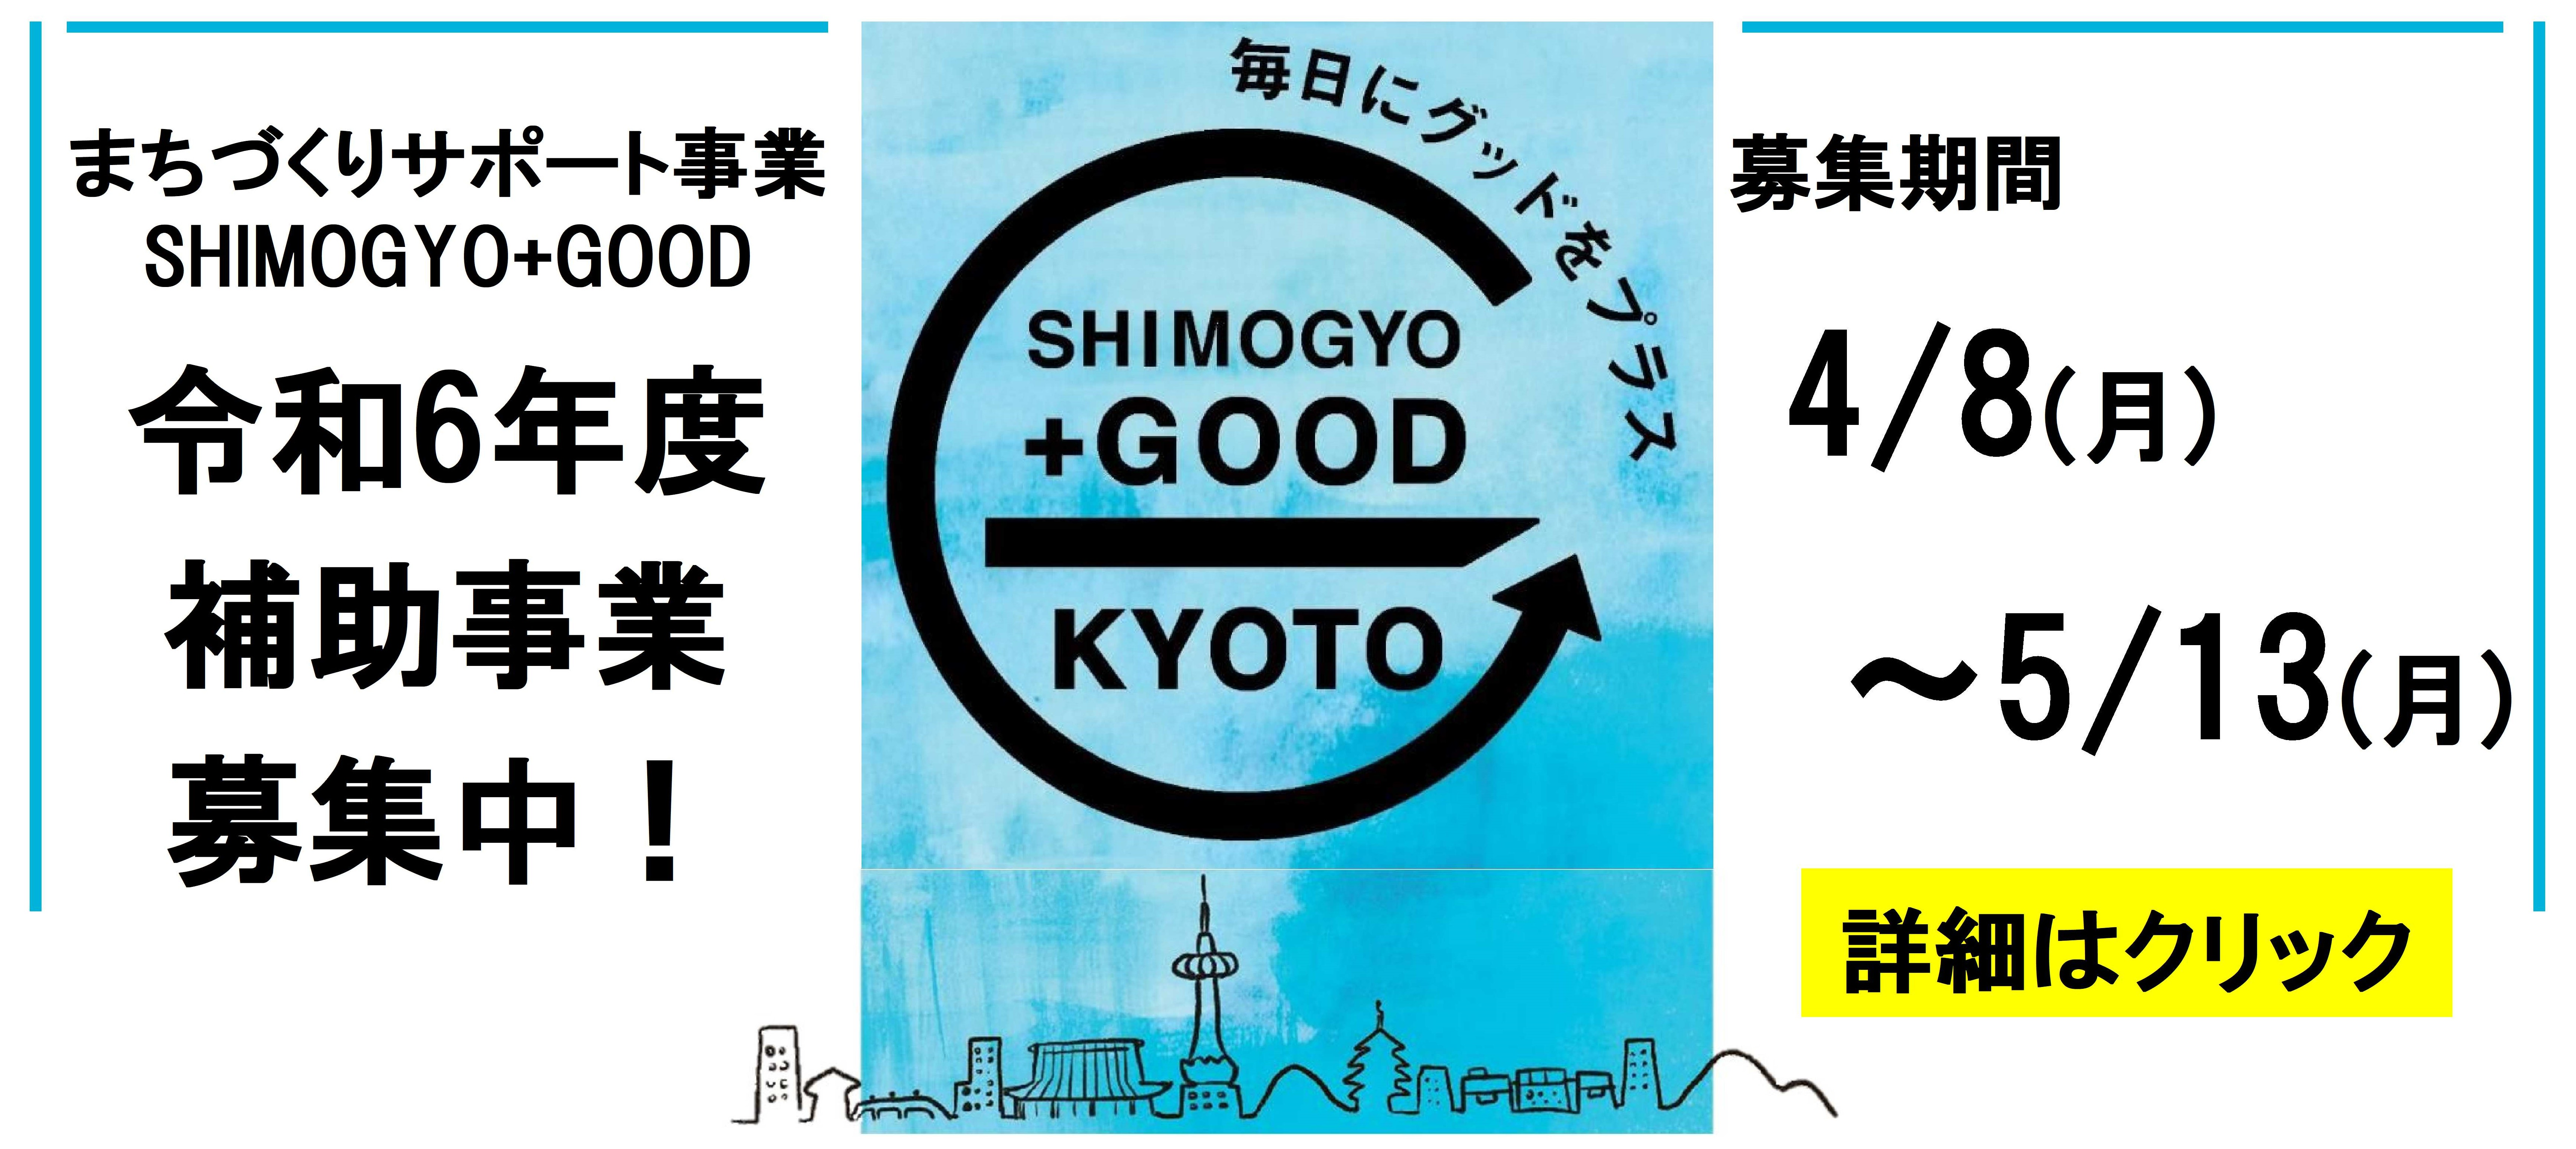 R6_SHIMOGYO+GOOD